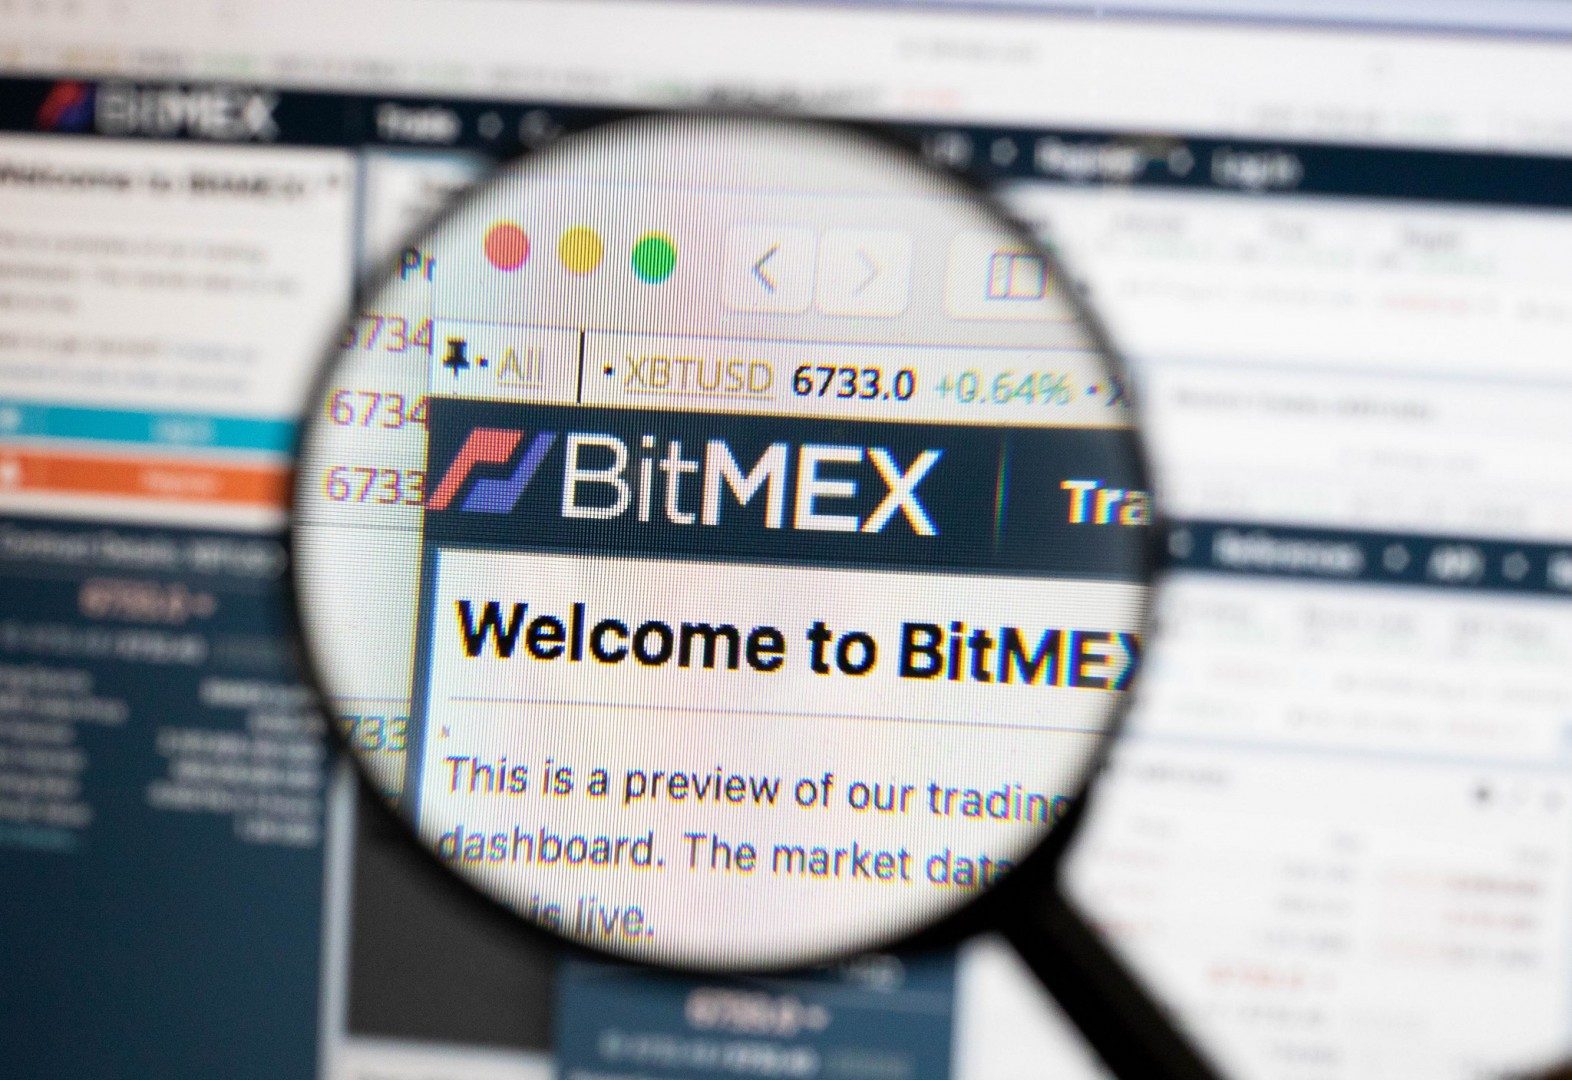 Το BitMEX κατηγορήθηκε για ξέπλυμα χρήματος και χειραγώγηση της αγοράς